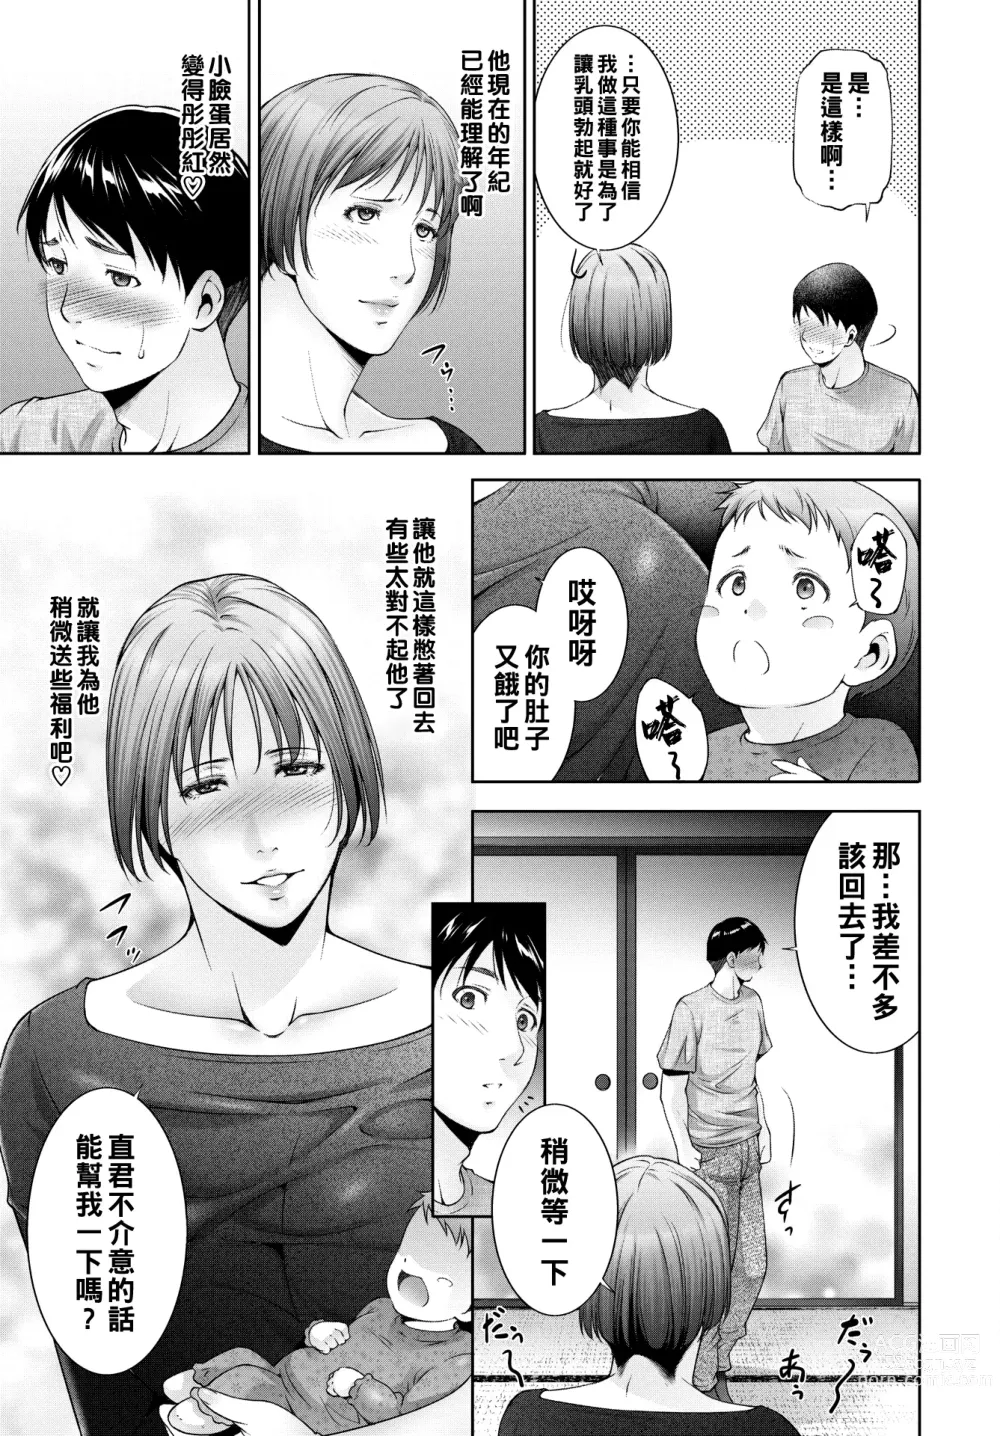 Page 3 of manga Milk o ageru - Give milk